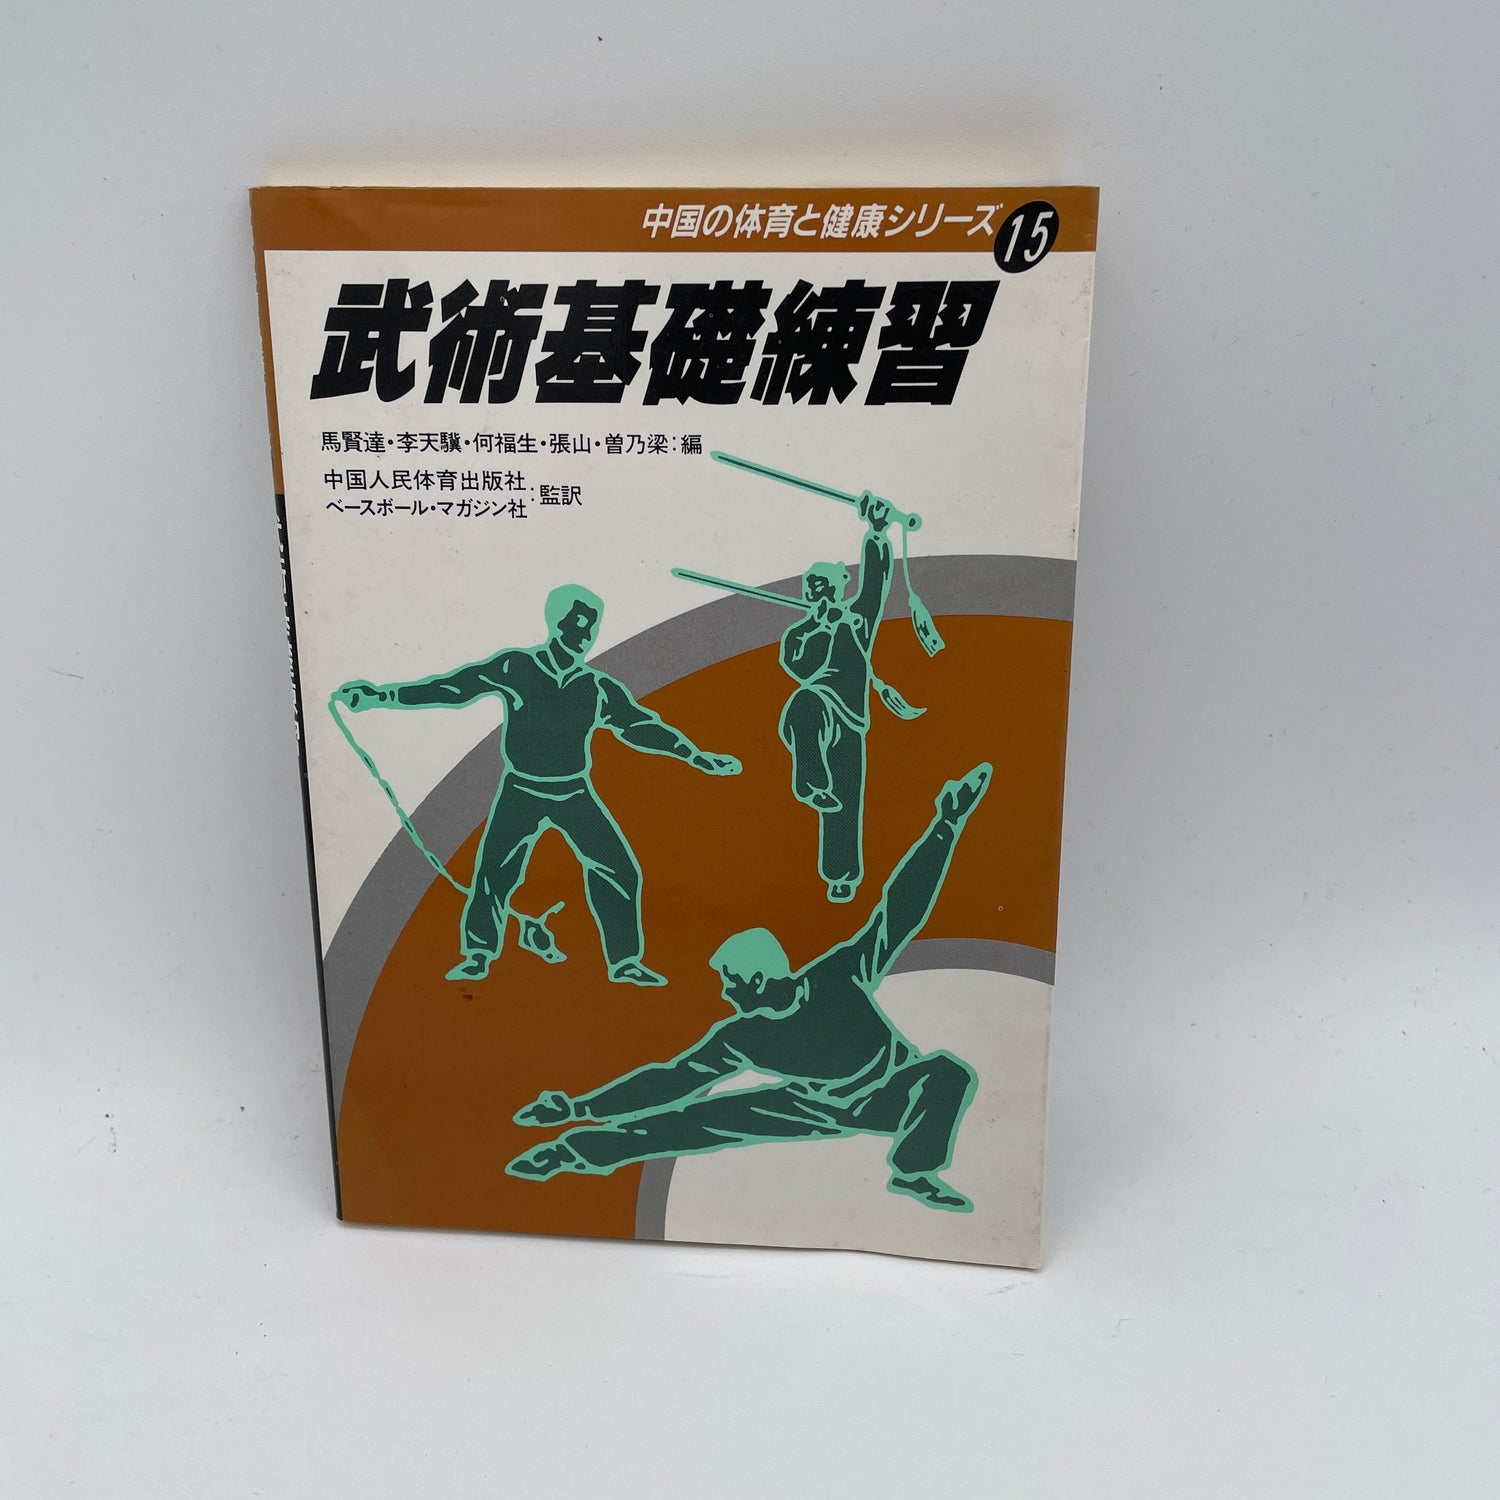 武術基礎実践: 中国体育と健康シリーズ #15 書籍 (中古)